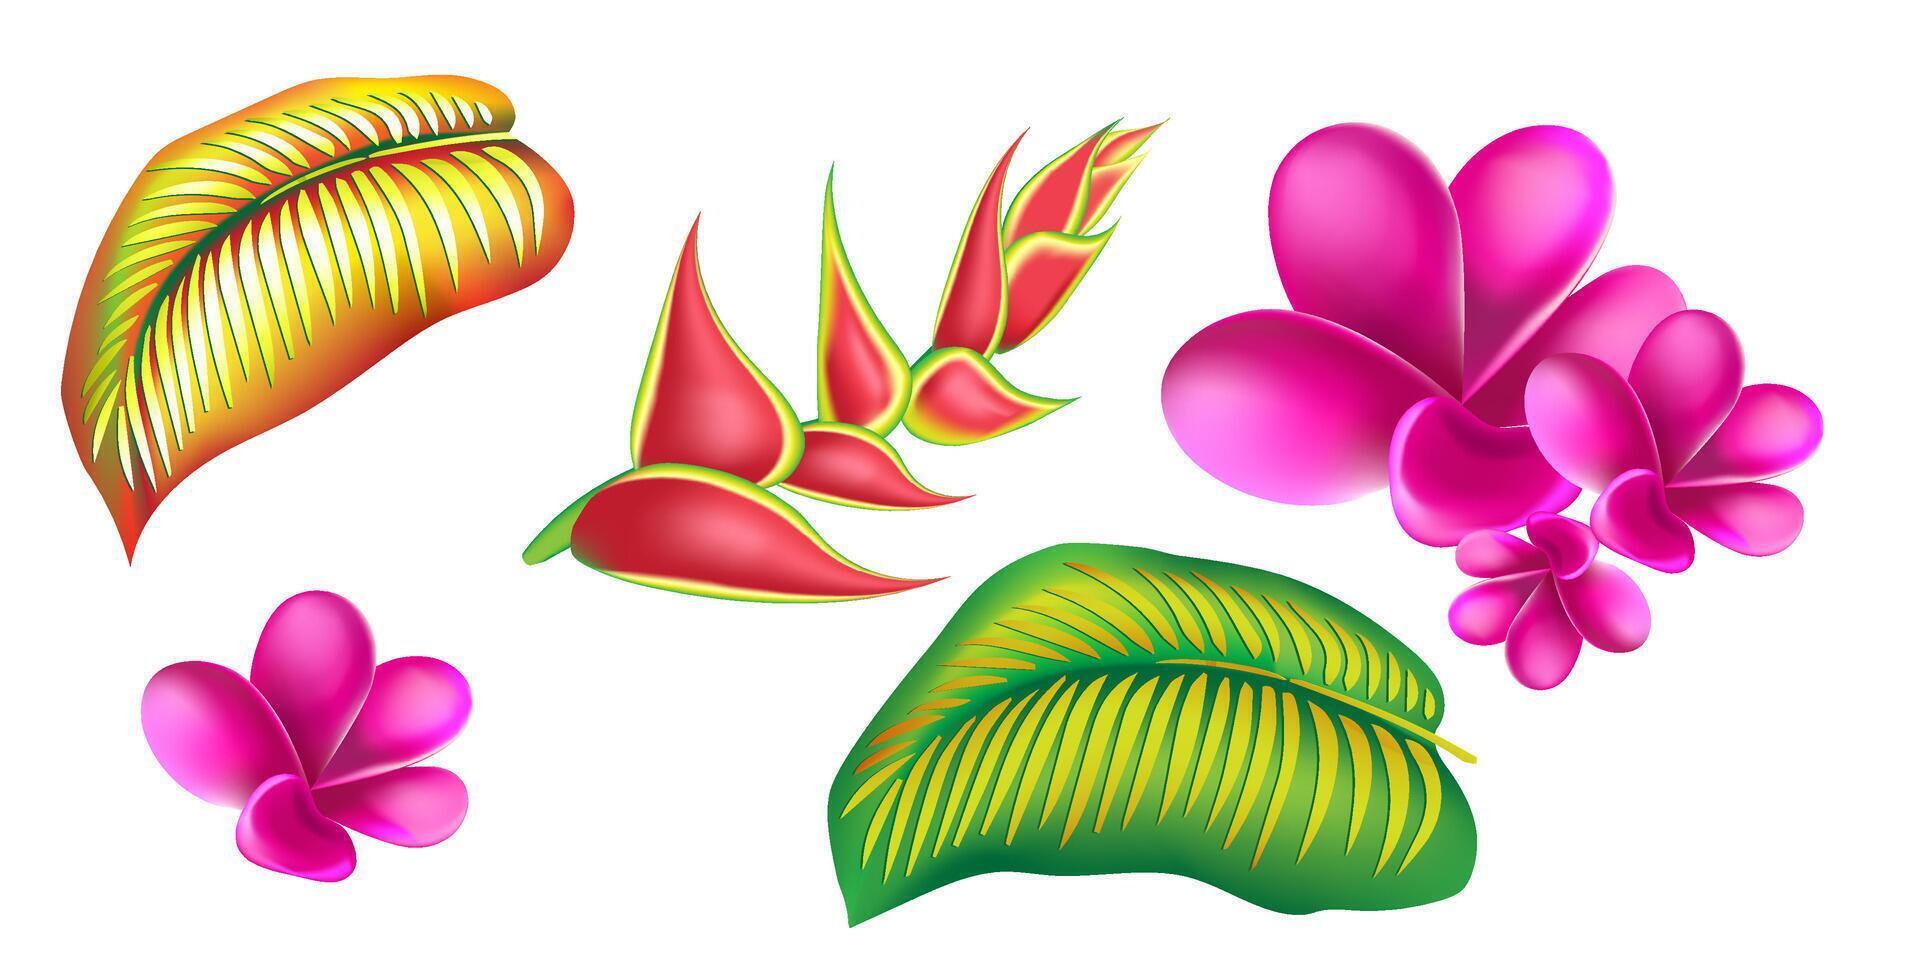 selva flor, hojas trópico colocar. aislado elementos. palma hoja, monstruo, rosado plumeria flor, hibisco florecer, exótico tropical verano flores y hojas. vector